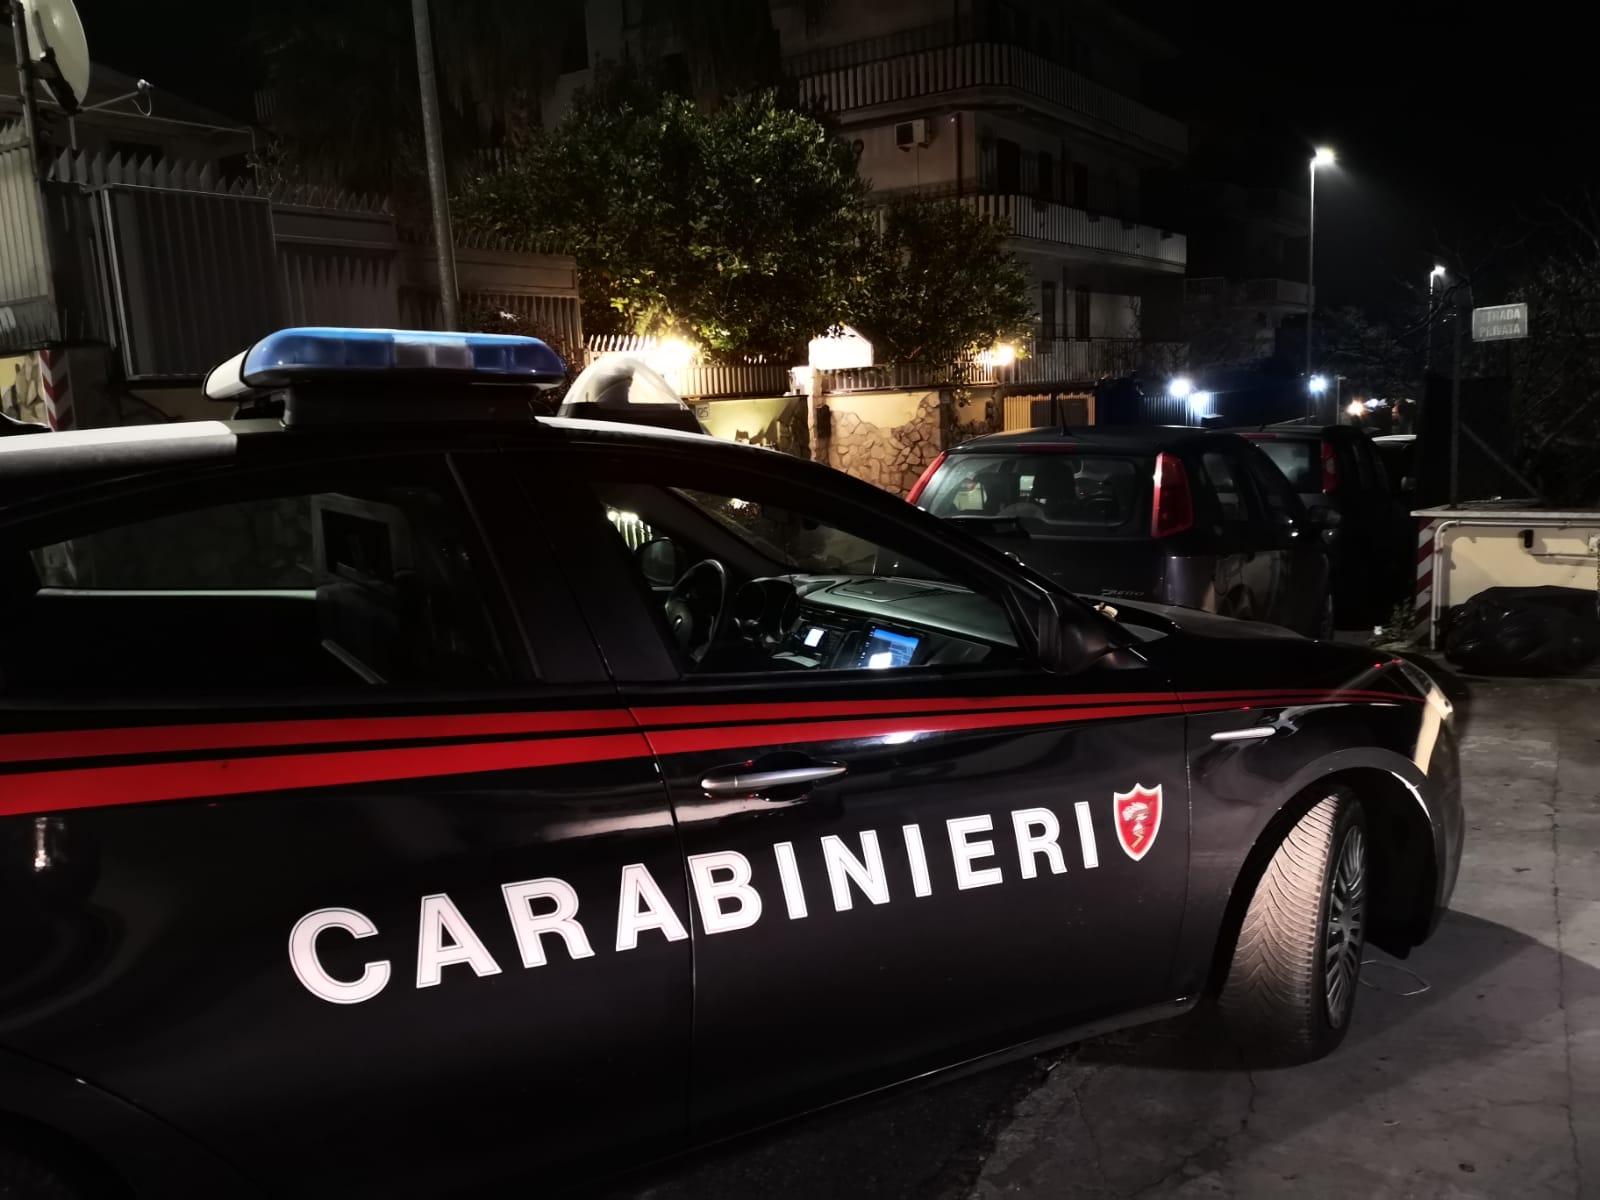 Cronaca Roma | I Carabinieri arrestano in flagranza due ladri con 4 collane di perle, ma la decisione del giudice lascia senza parole